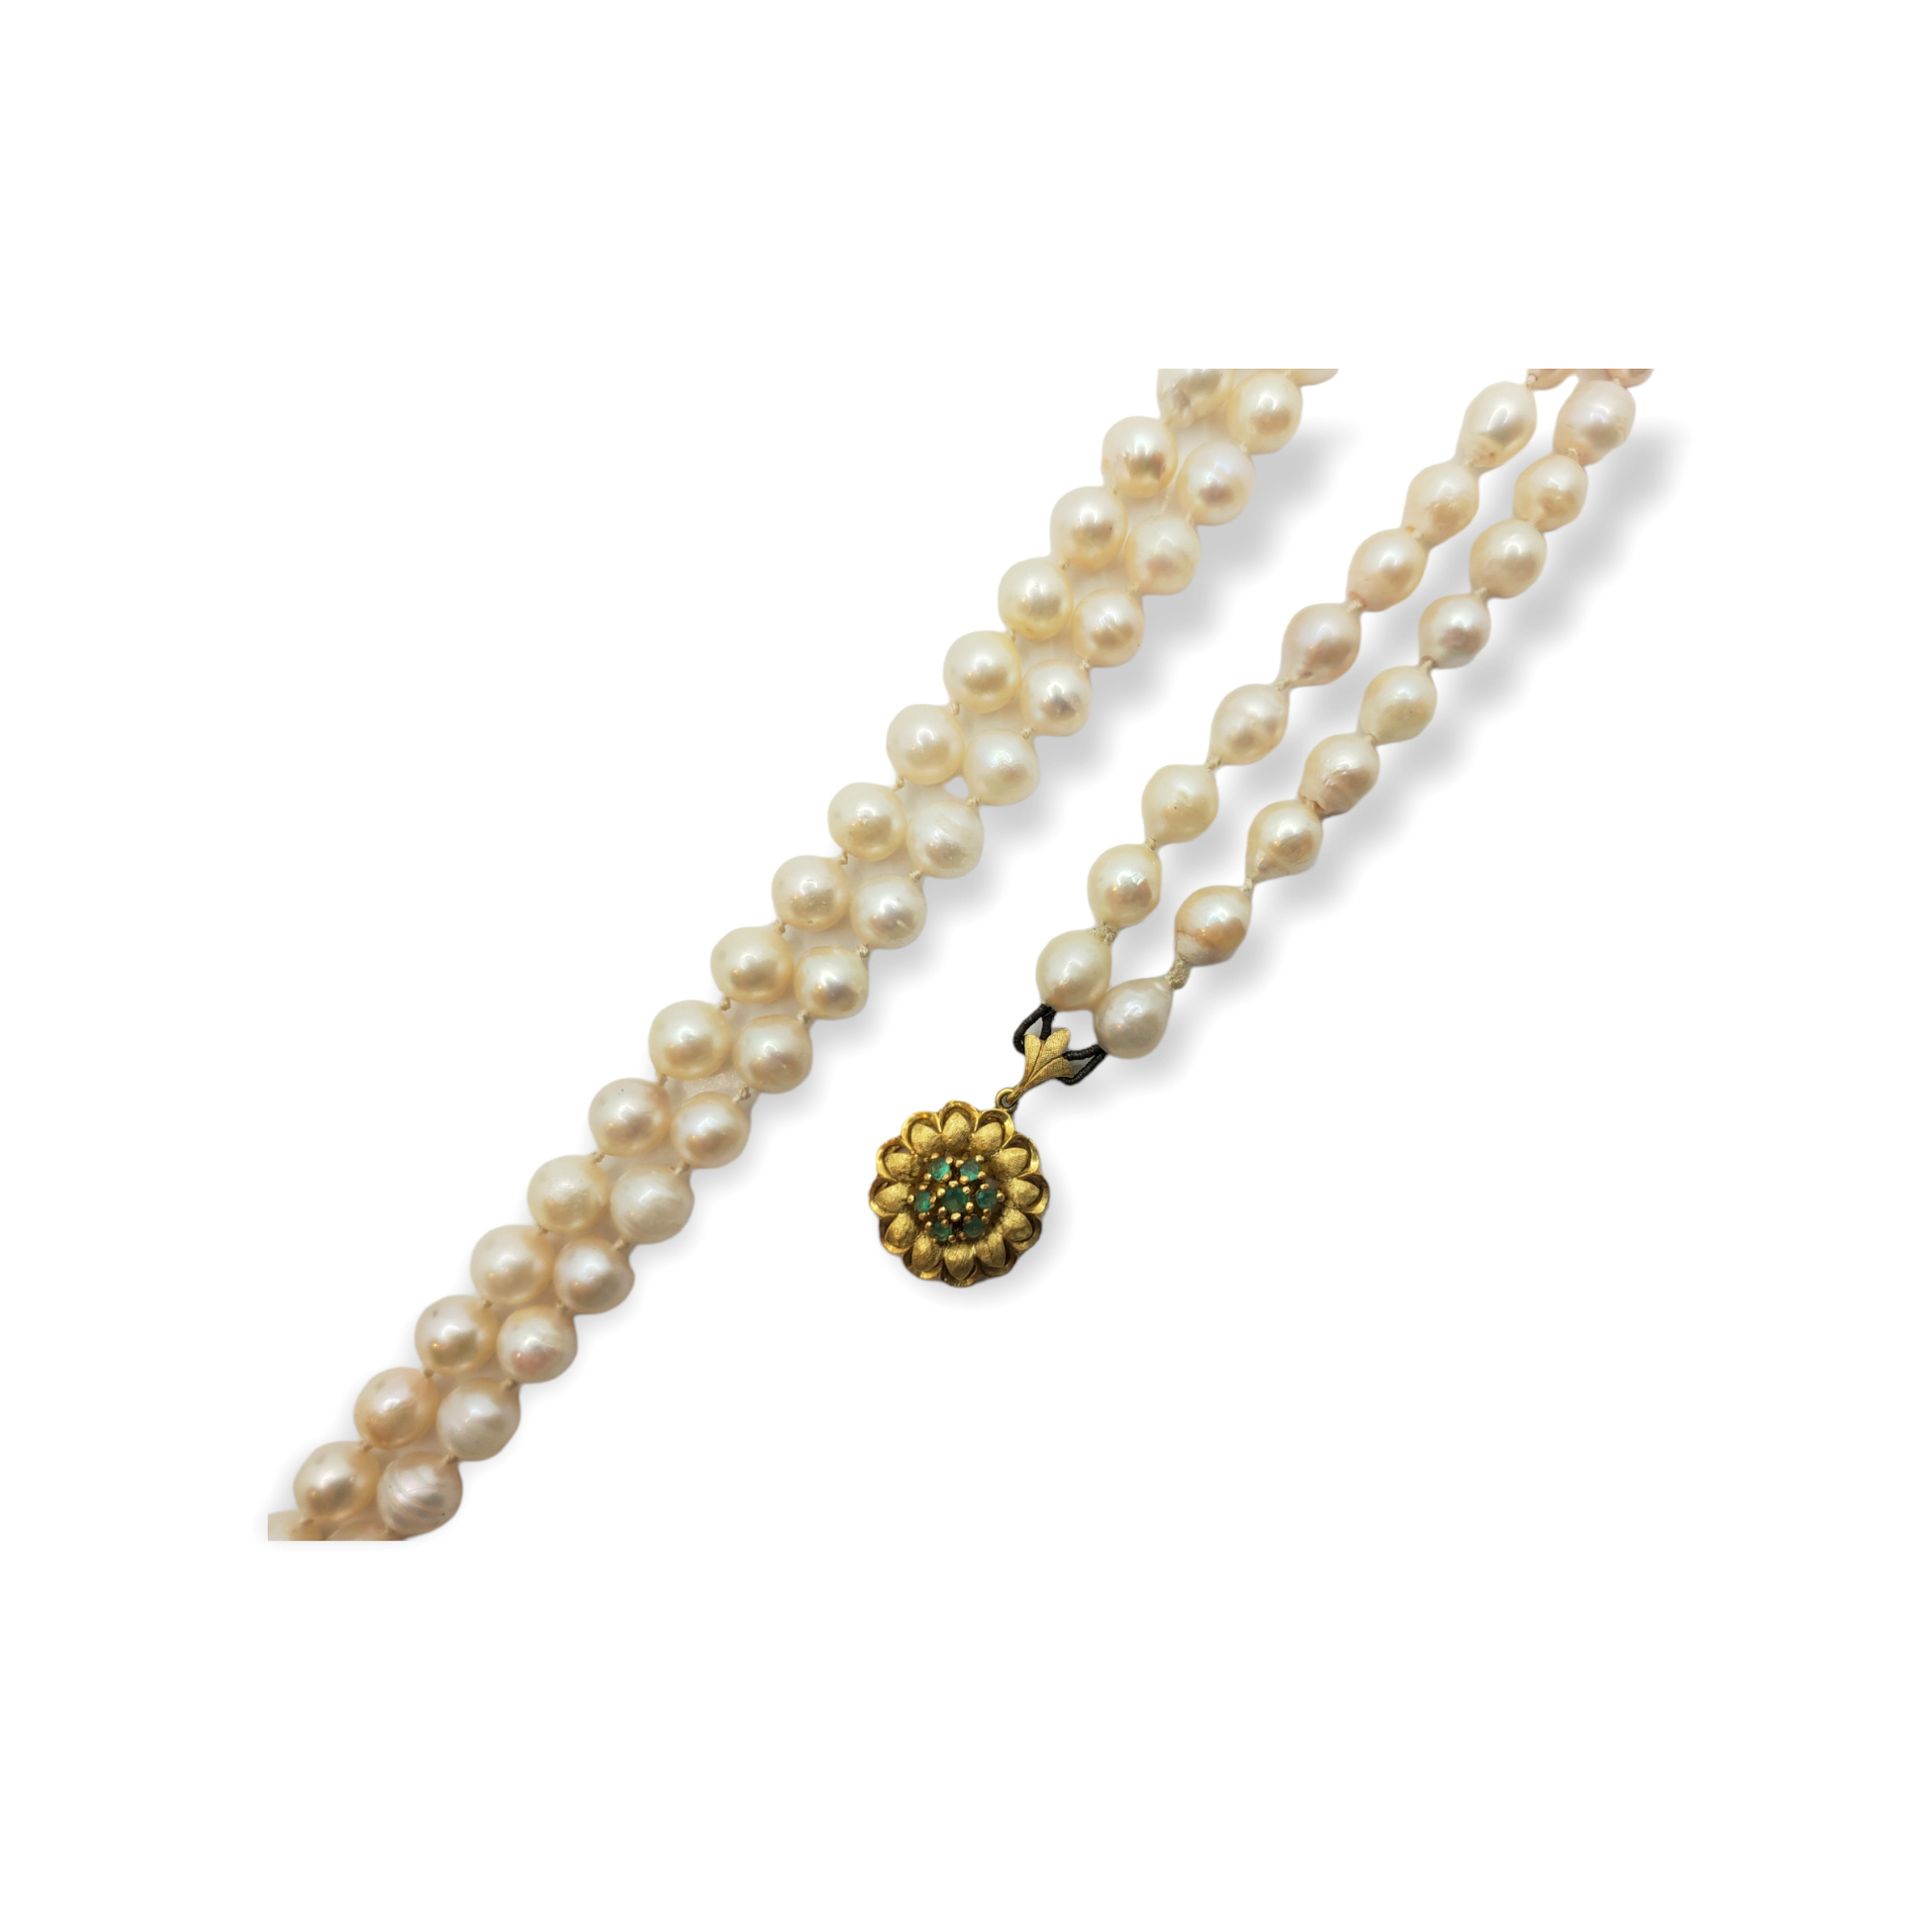 Collar de perlas con cierre de esmeraldas 双层珍珠项链领，18K红宝石花纹领。 

长74厘米。珍珠直径6,5-7毫米